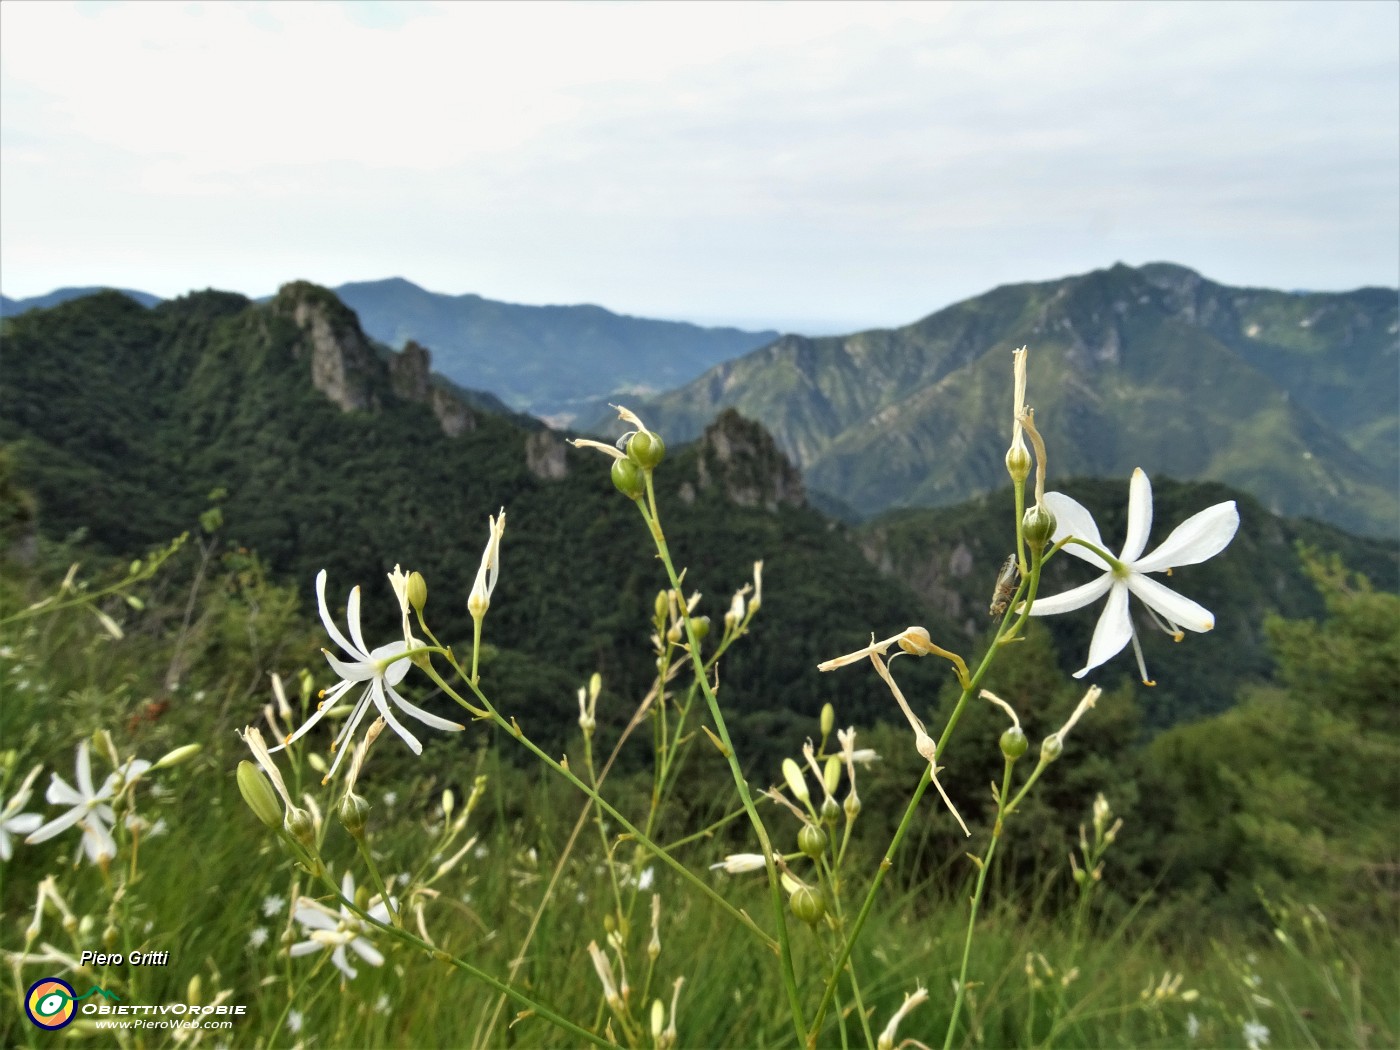 27 Bei fiori bianchi di Lilioasfodelo minore ( Anthericum ramosum) sul sentiero con vista verso Corne Maria e Pedezzina e Canto Alto.JPG